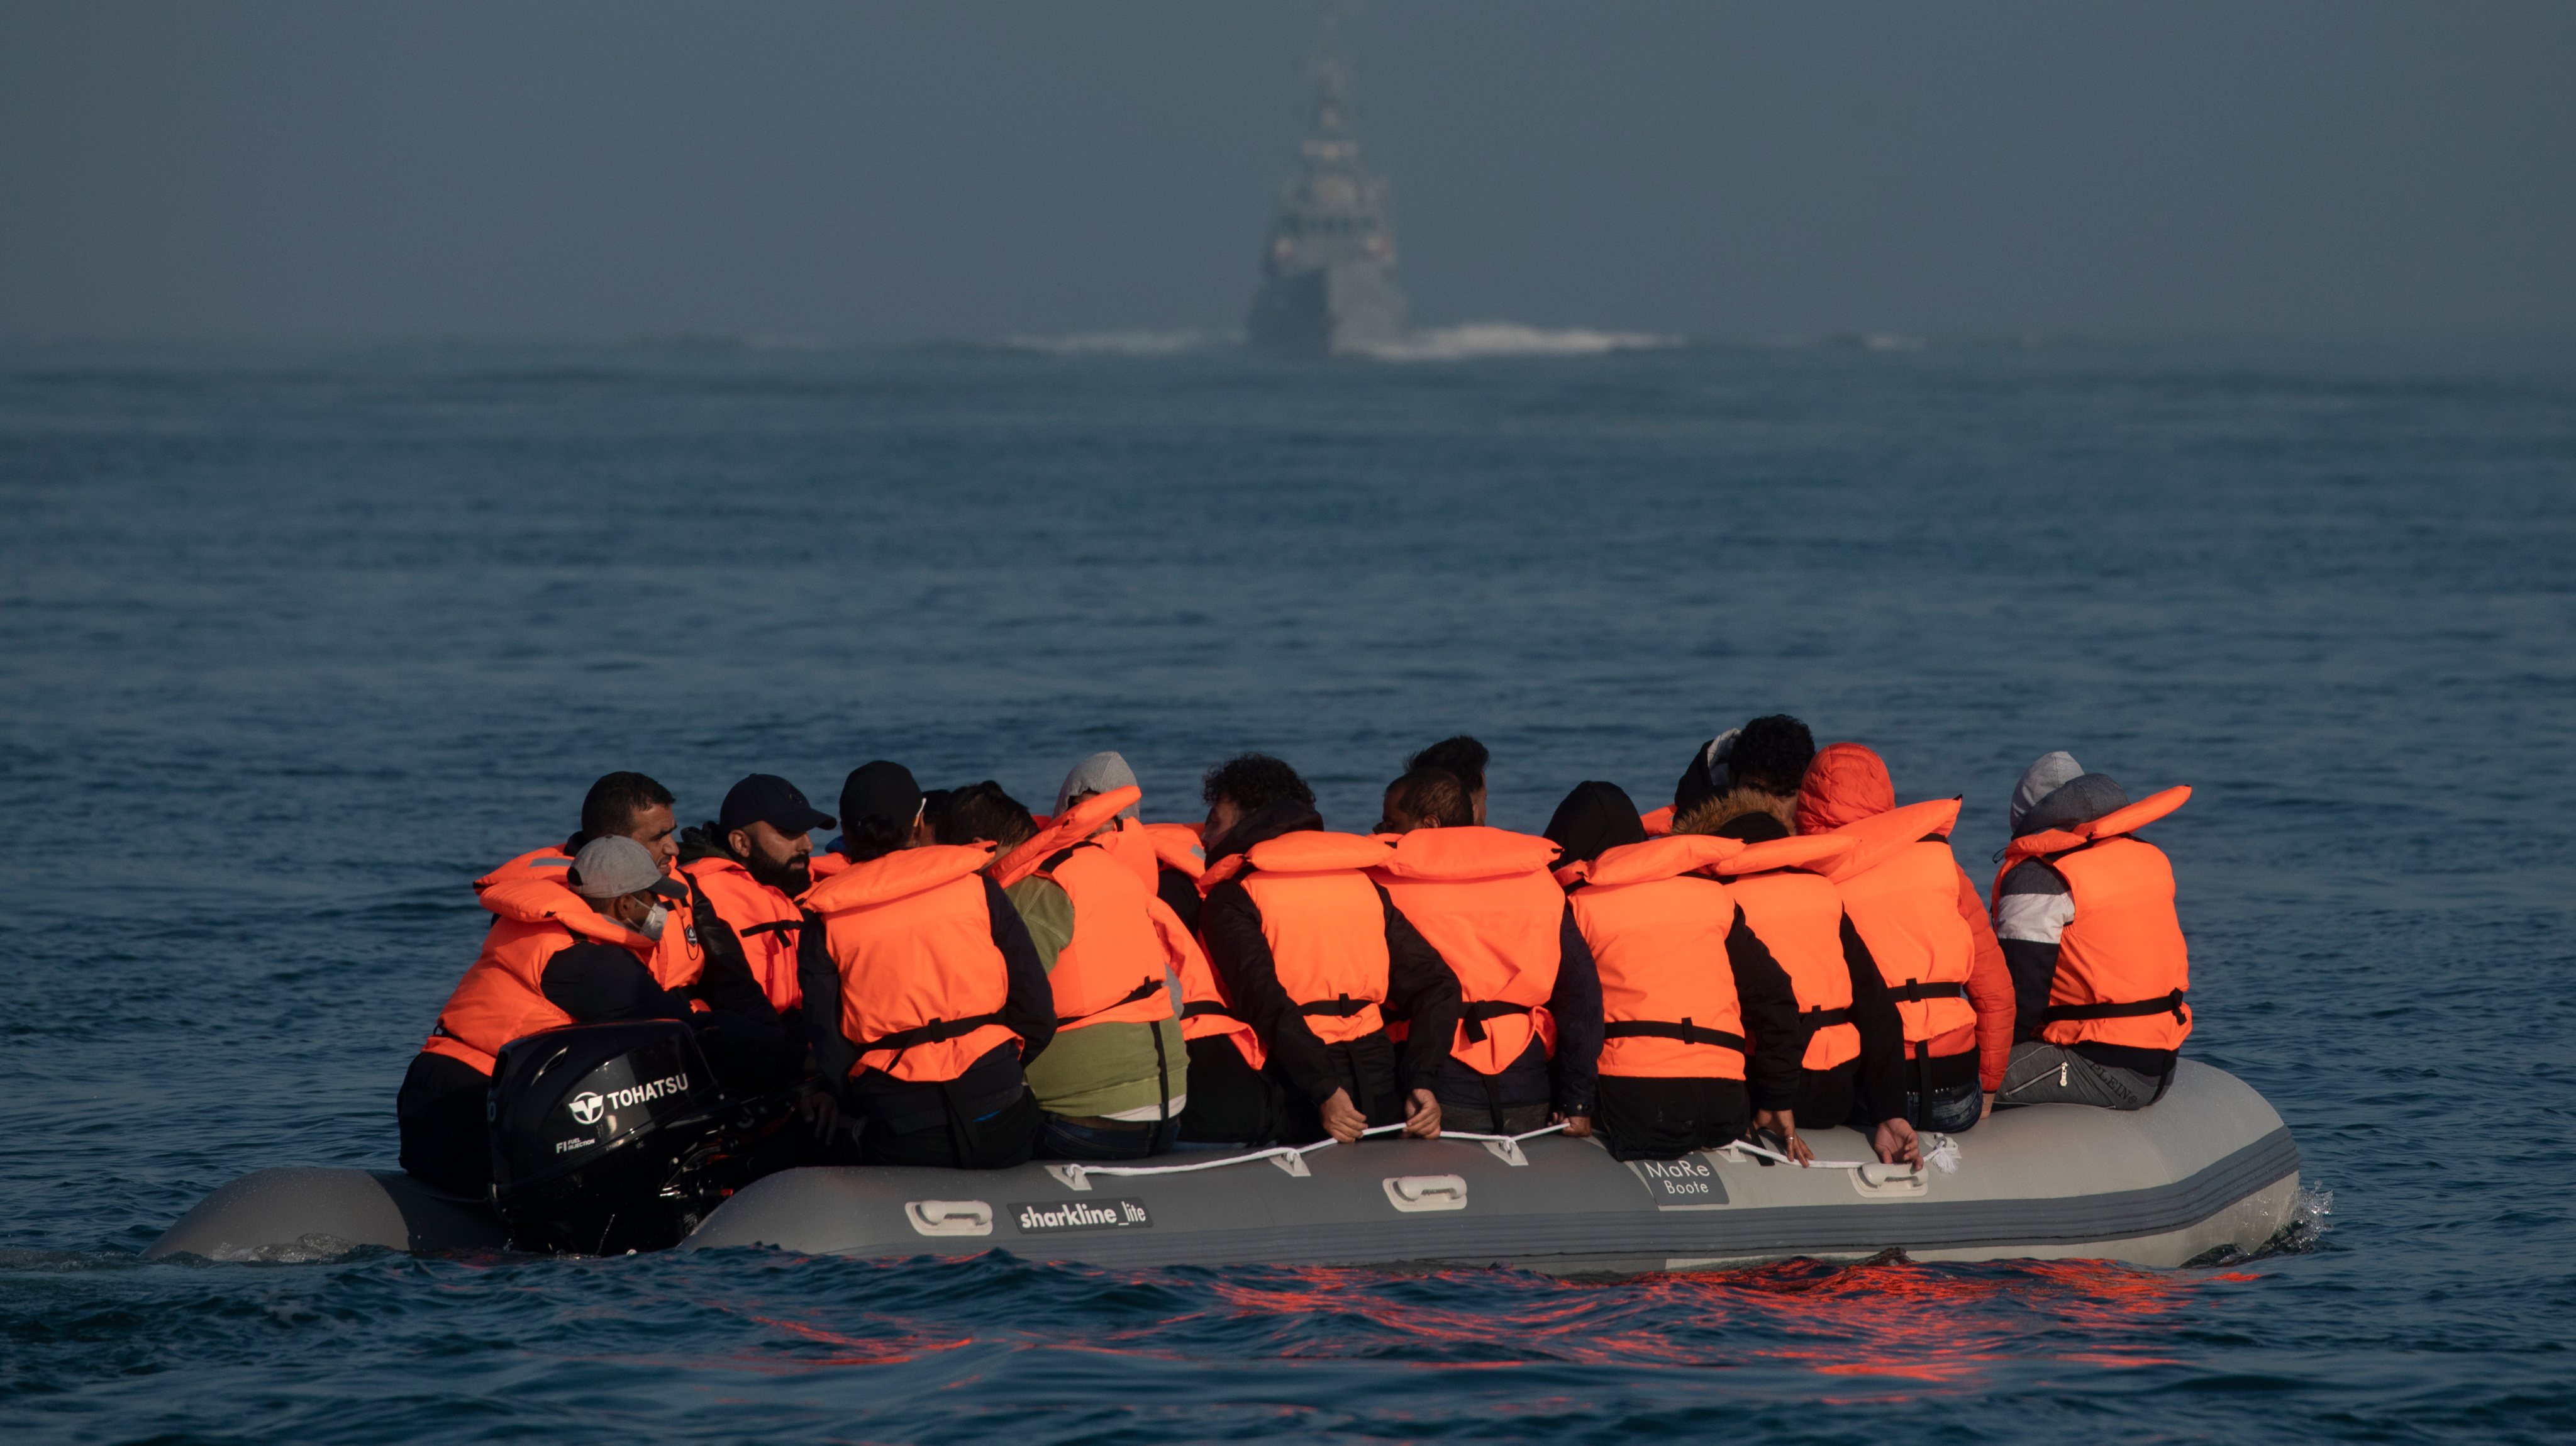 Migrantes atravessam ilegalmente o canal da mancha